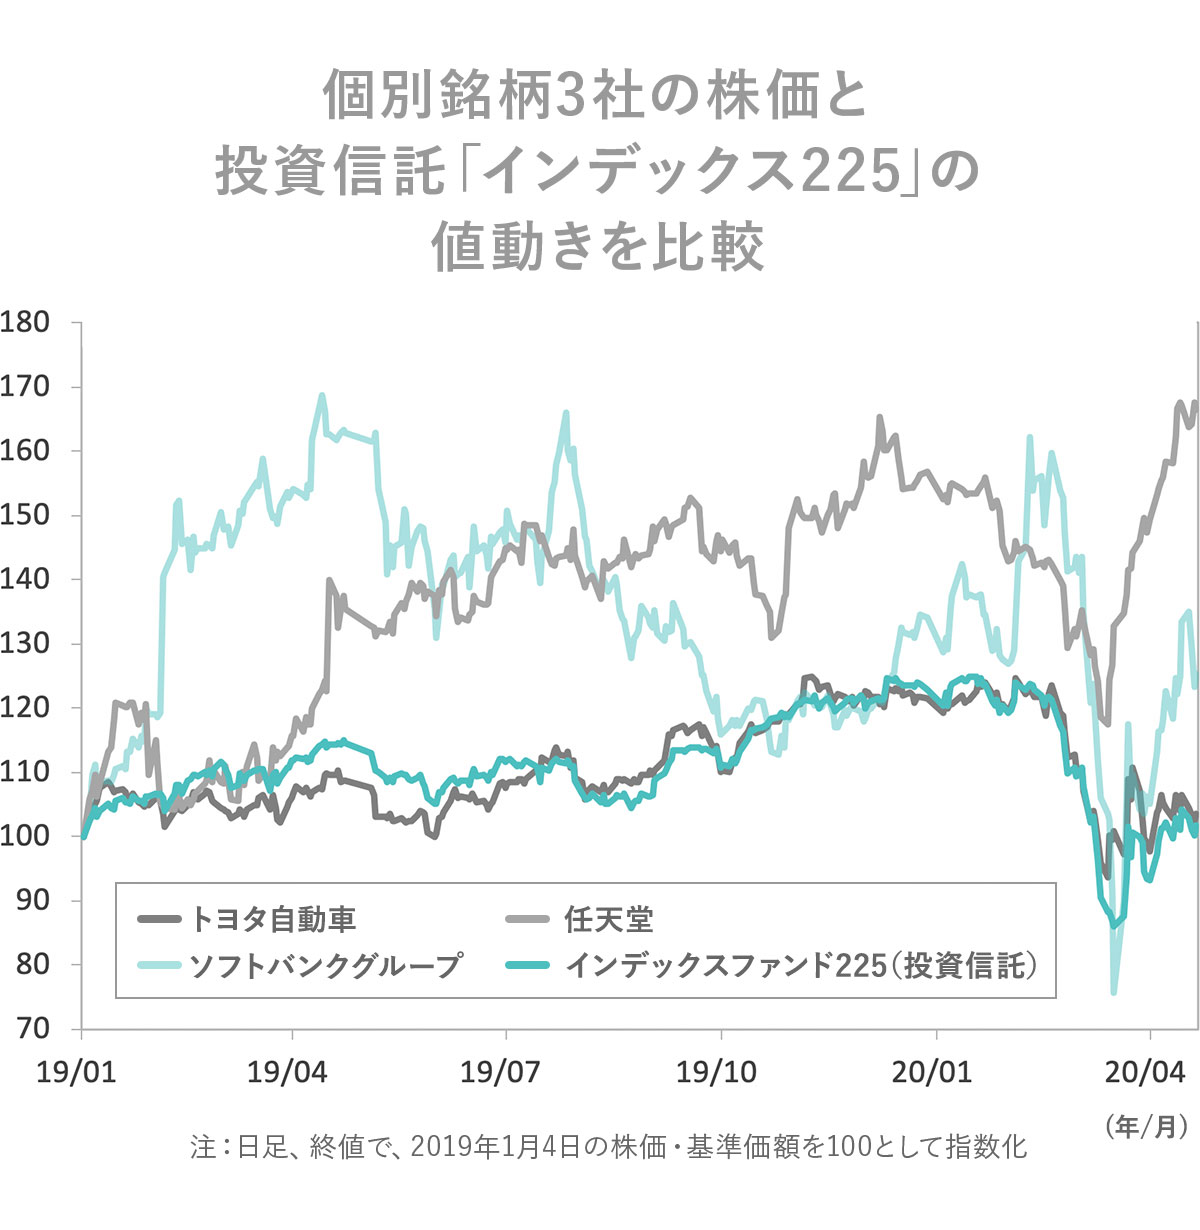 個別銘柄と日経平均株価のインデックスファンドの比較